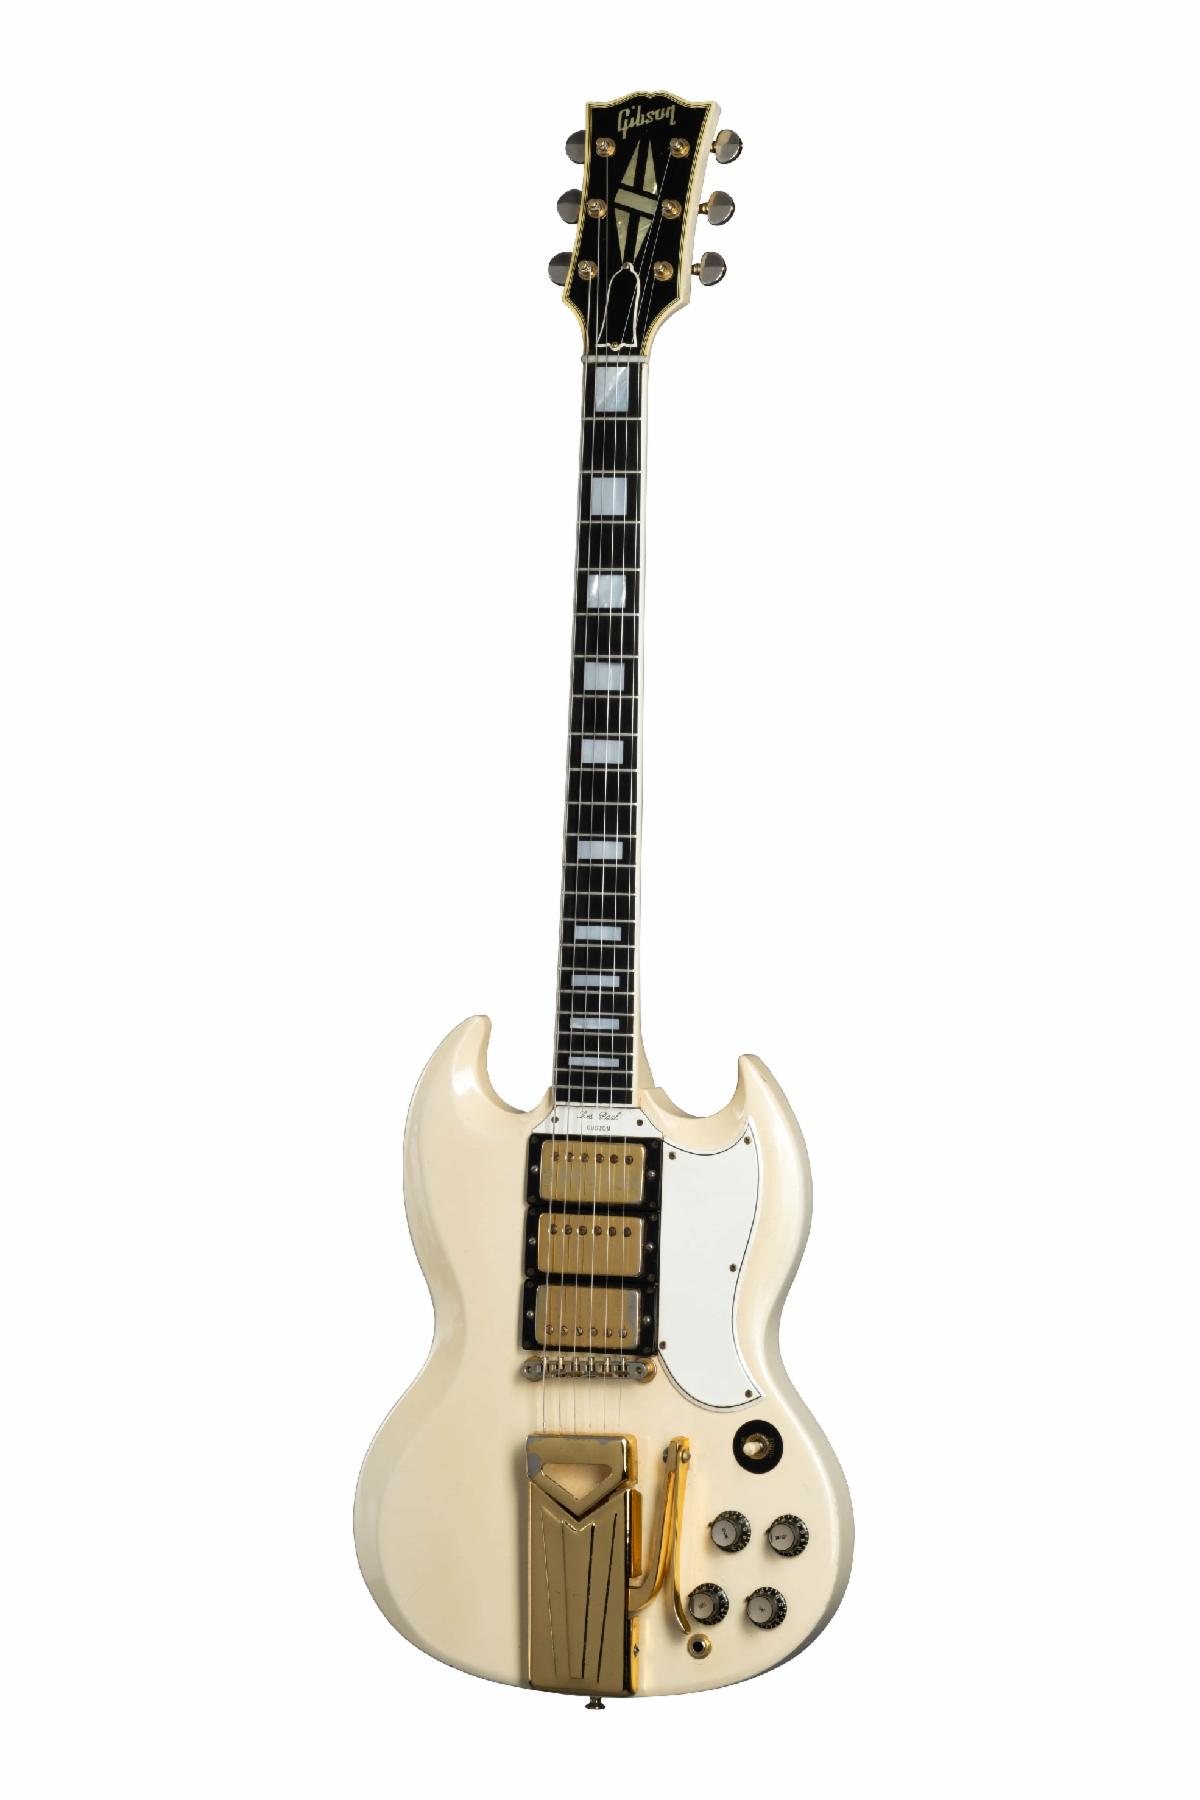 The 1958 Gibson Les Paul Custom “Black Beauty.”